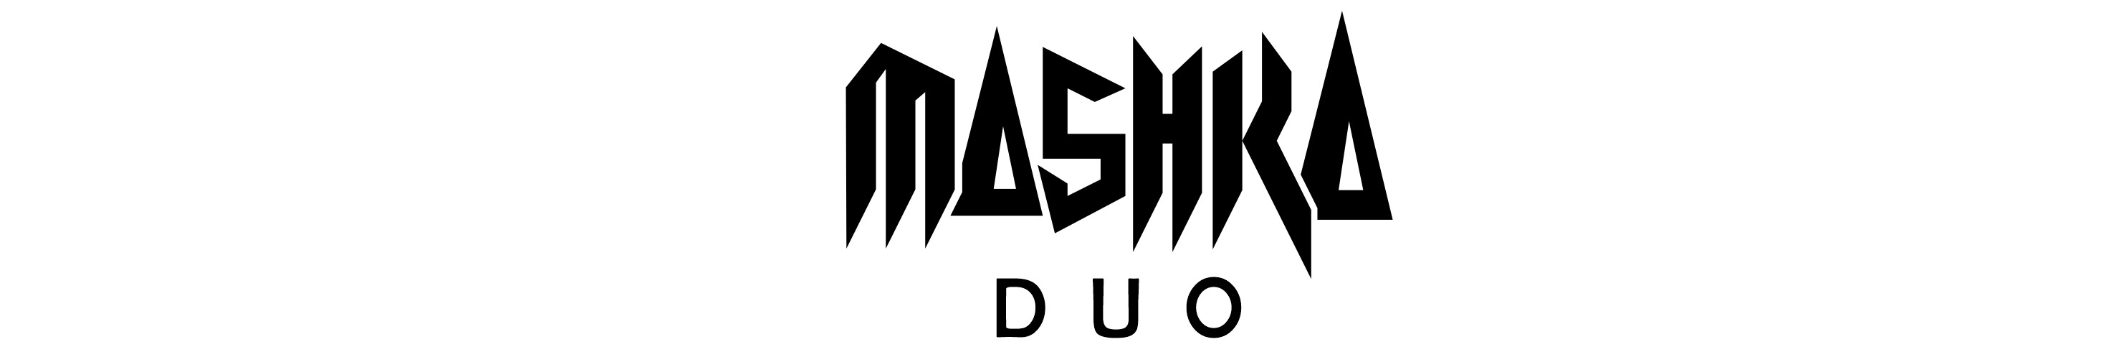 Mashka Duo